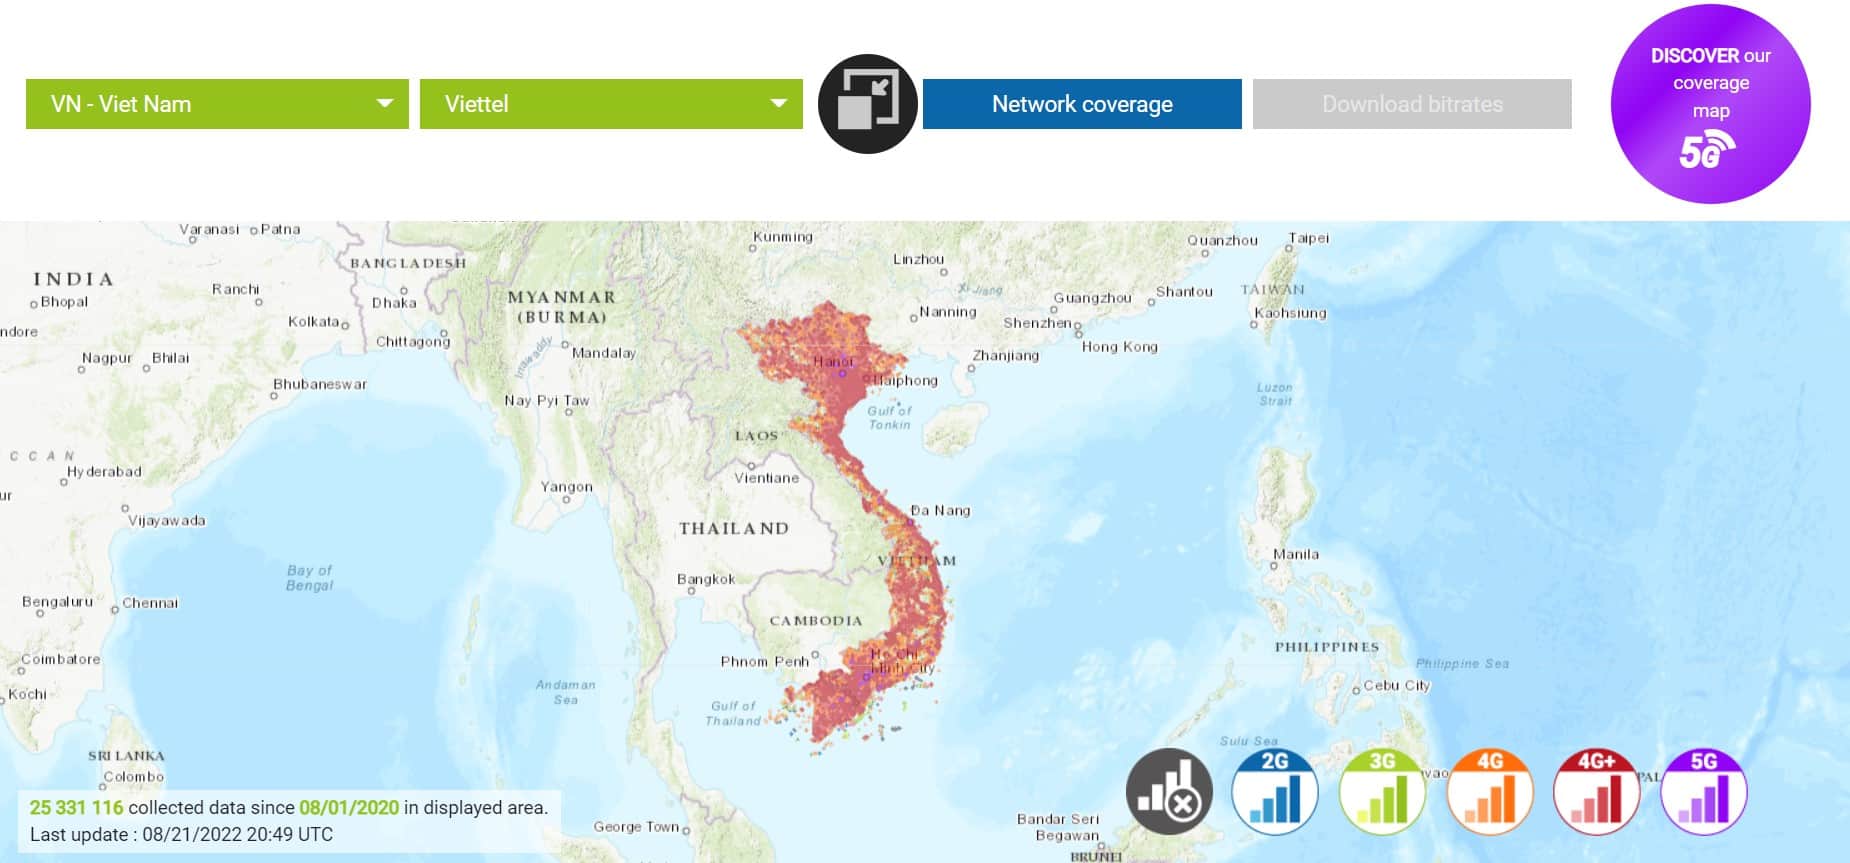 Viettel network coverage map - gigago